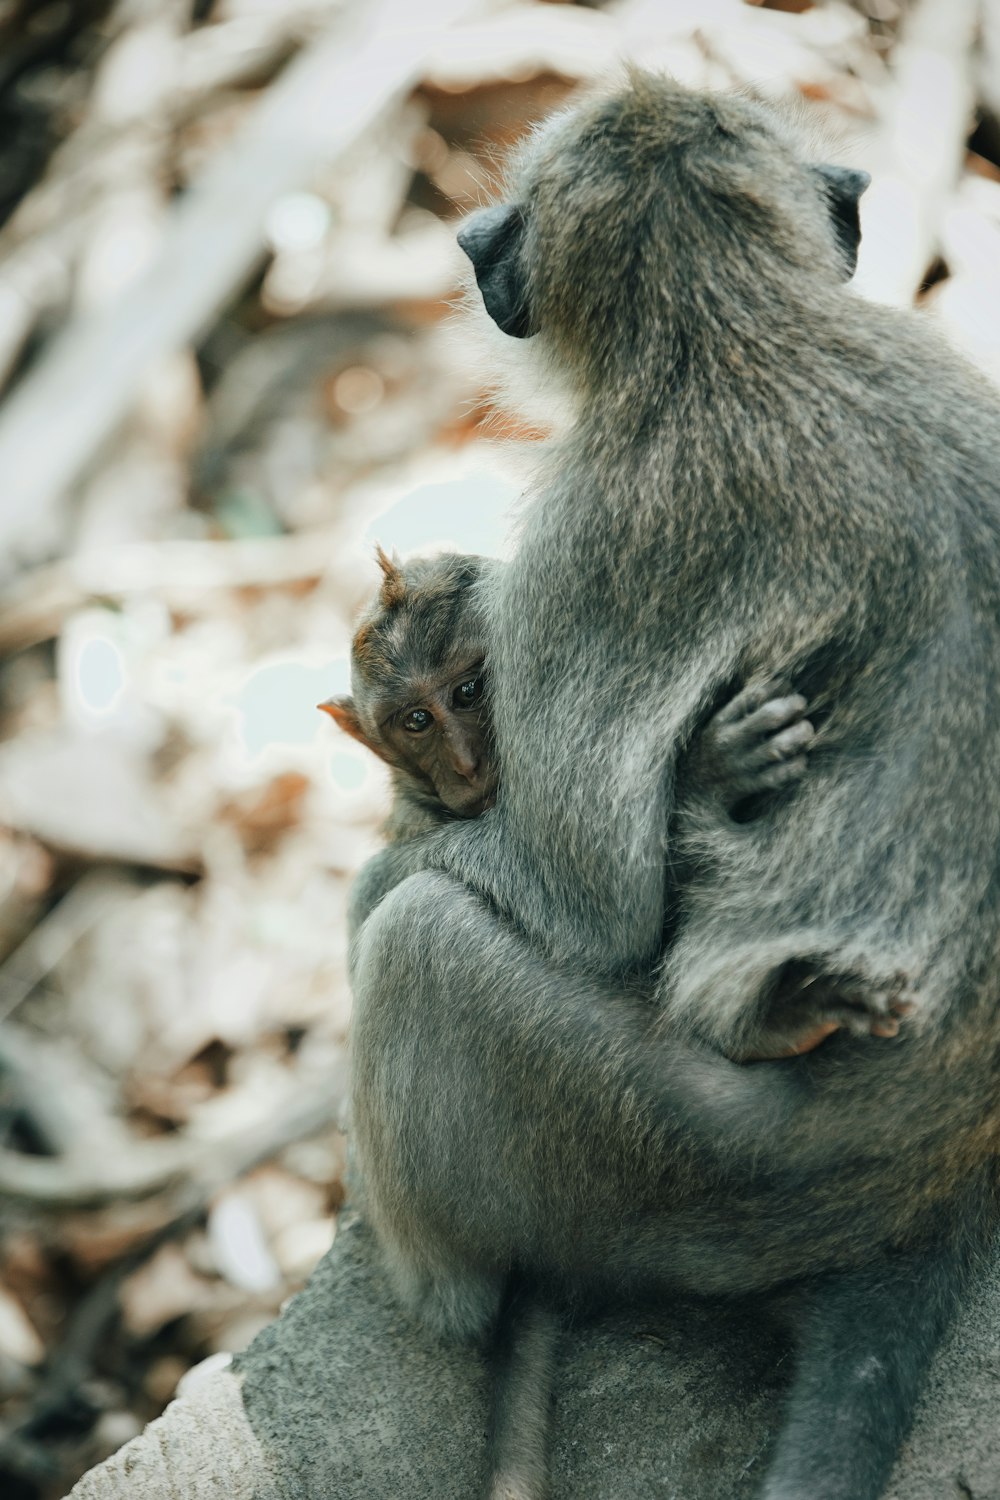 macro photography of two gray monkeys